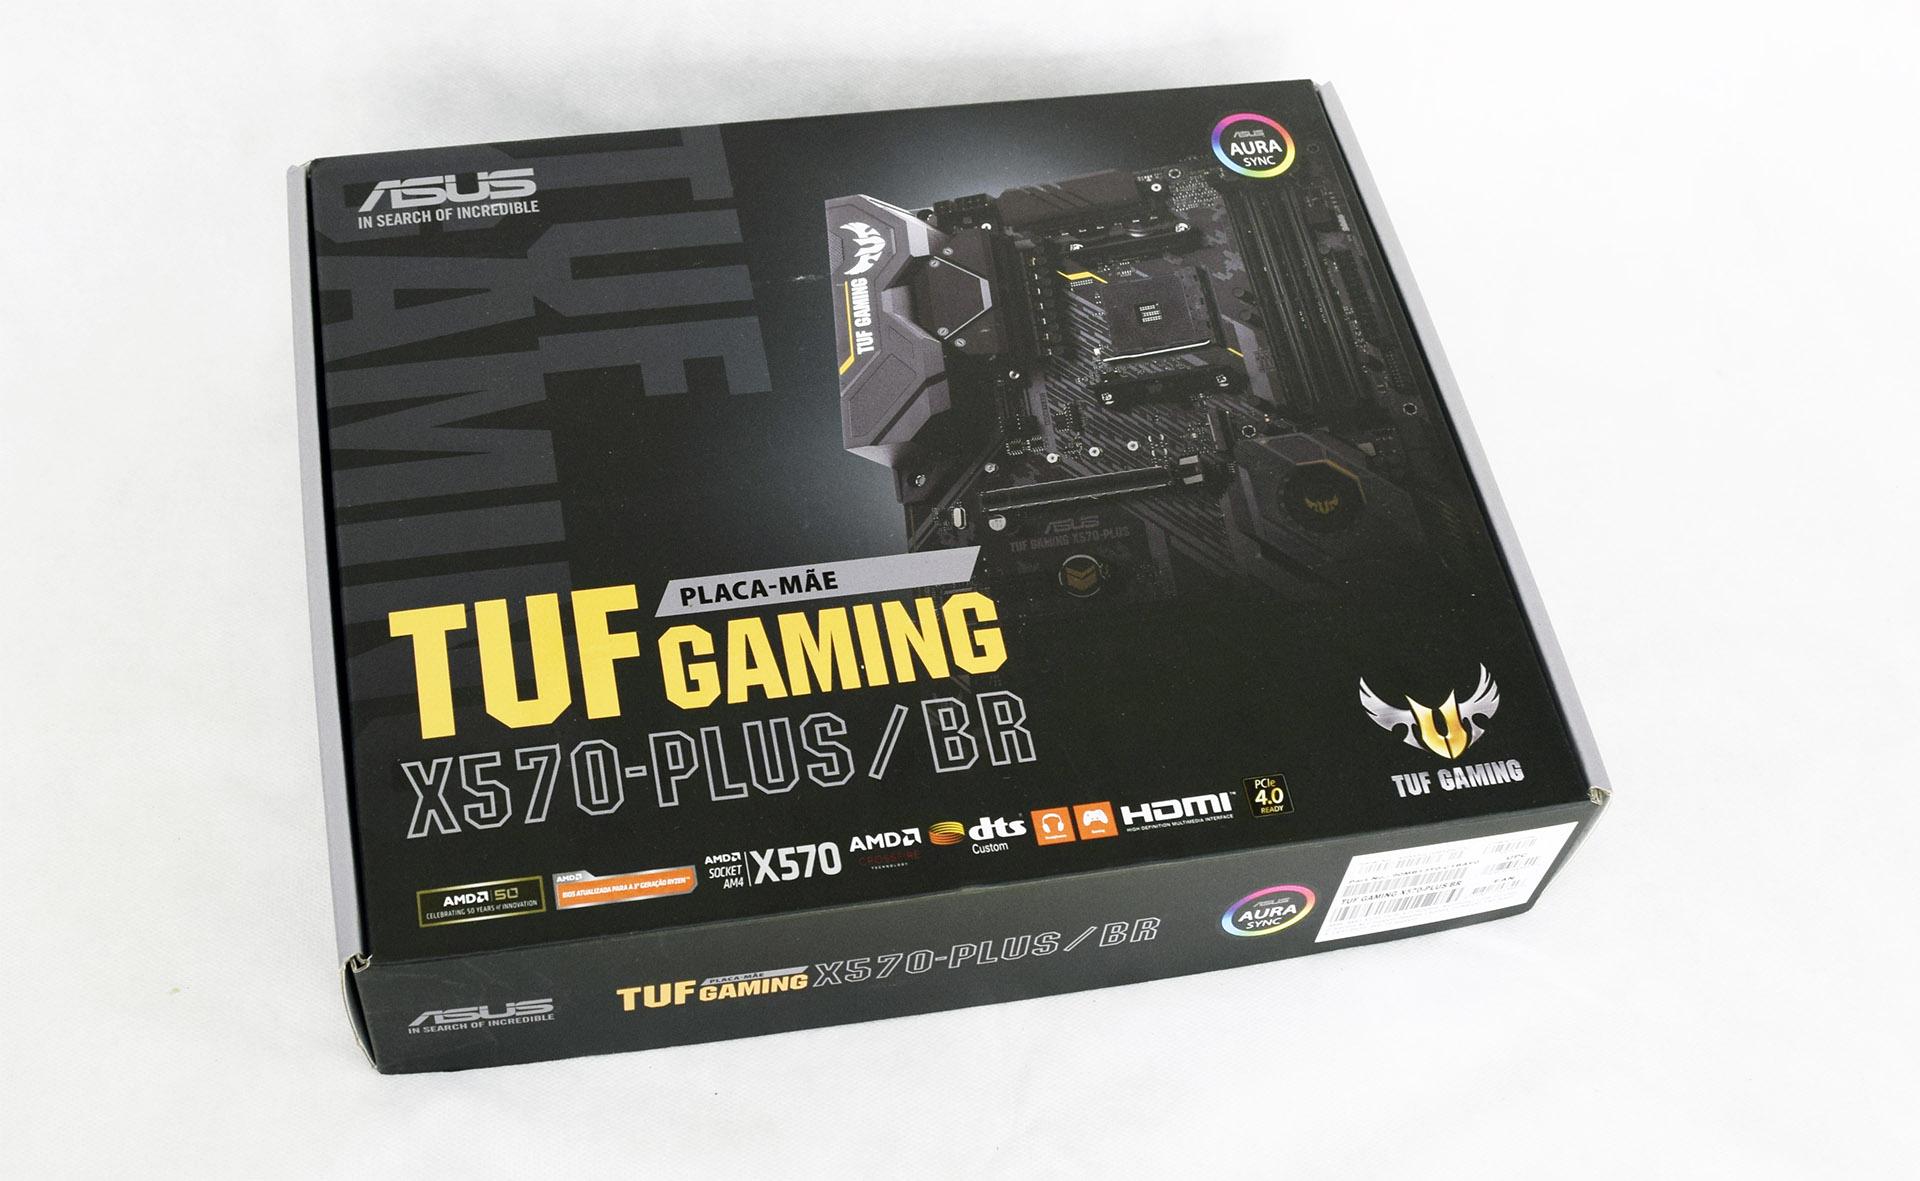 Placa-mãe ASUS TUF Gaming X570-PLUS/BR